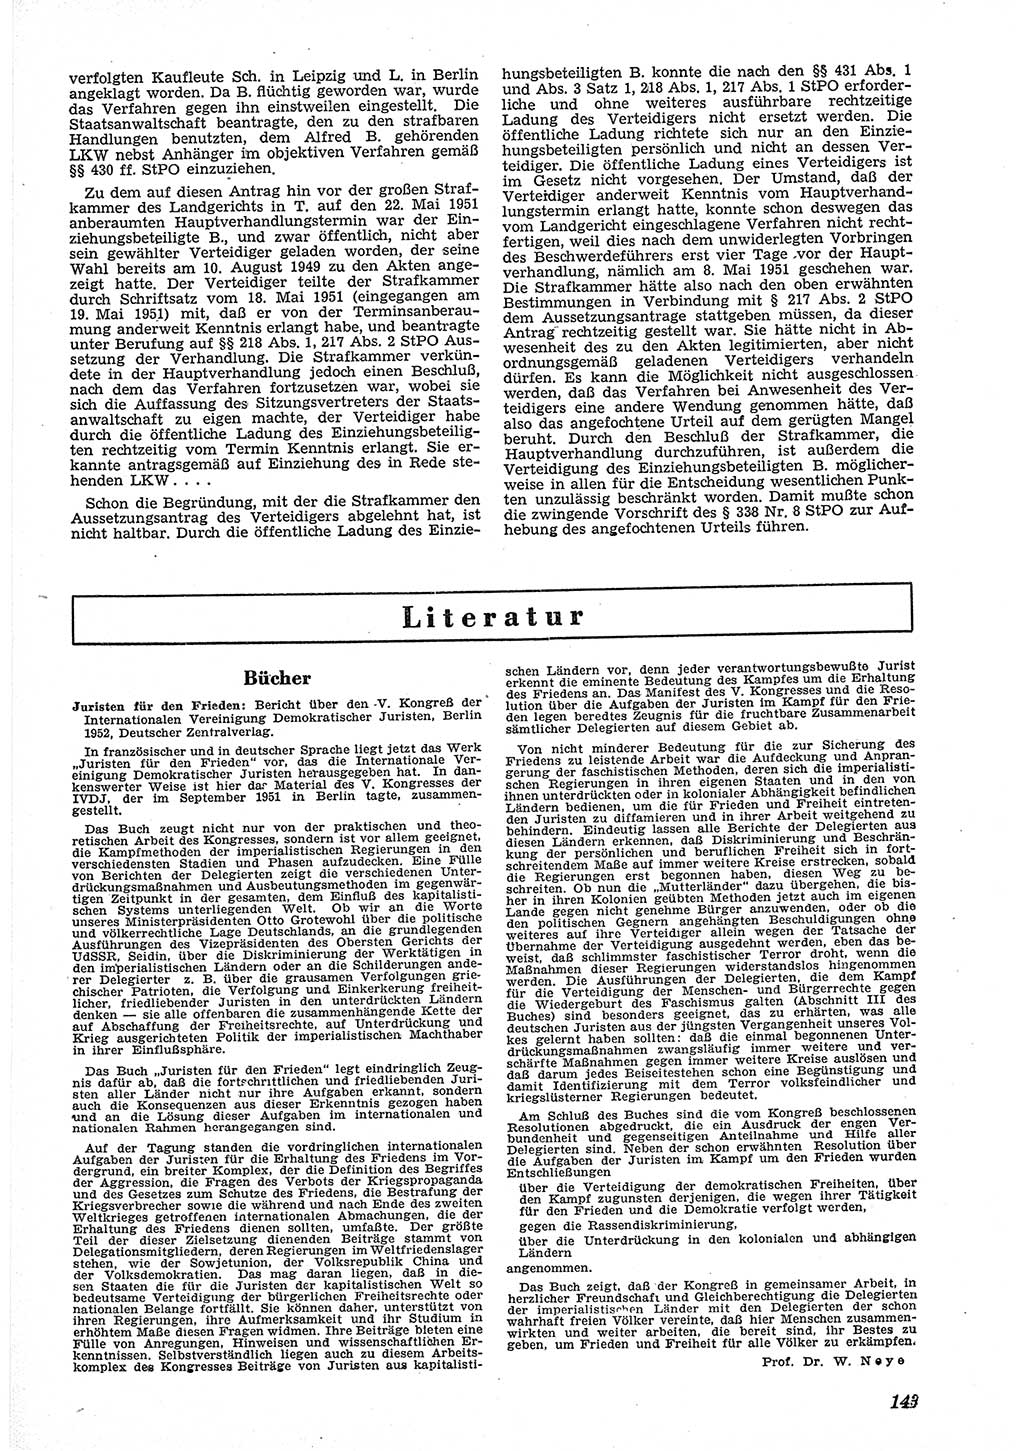 Neue Justiz (NJ), Zeitschrift für Recht und Rechtswissenschaft [Deutsche Demokratische Republik (DDR)], 6. Jahrgang 1952, Seite 143 (NJ DDR 1952, S. 143)